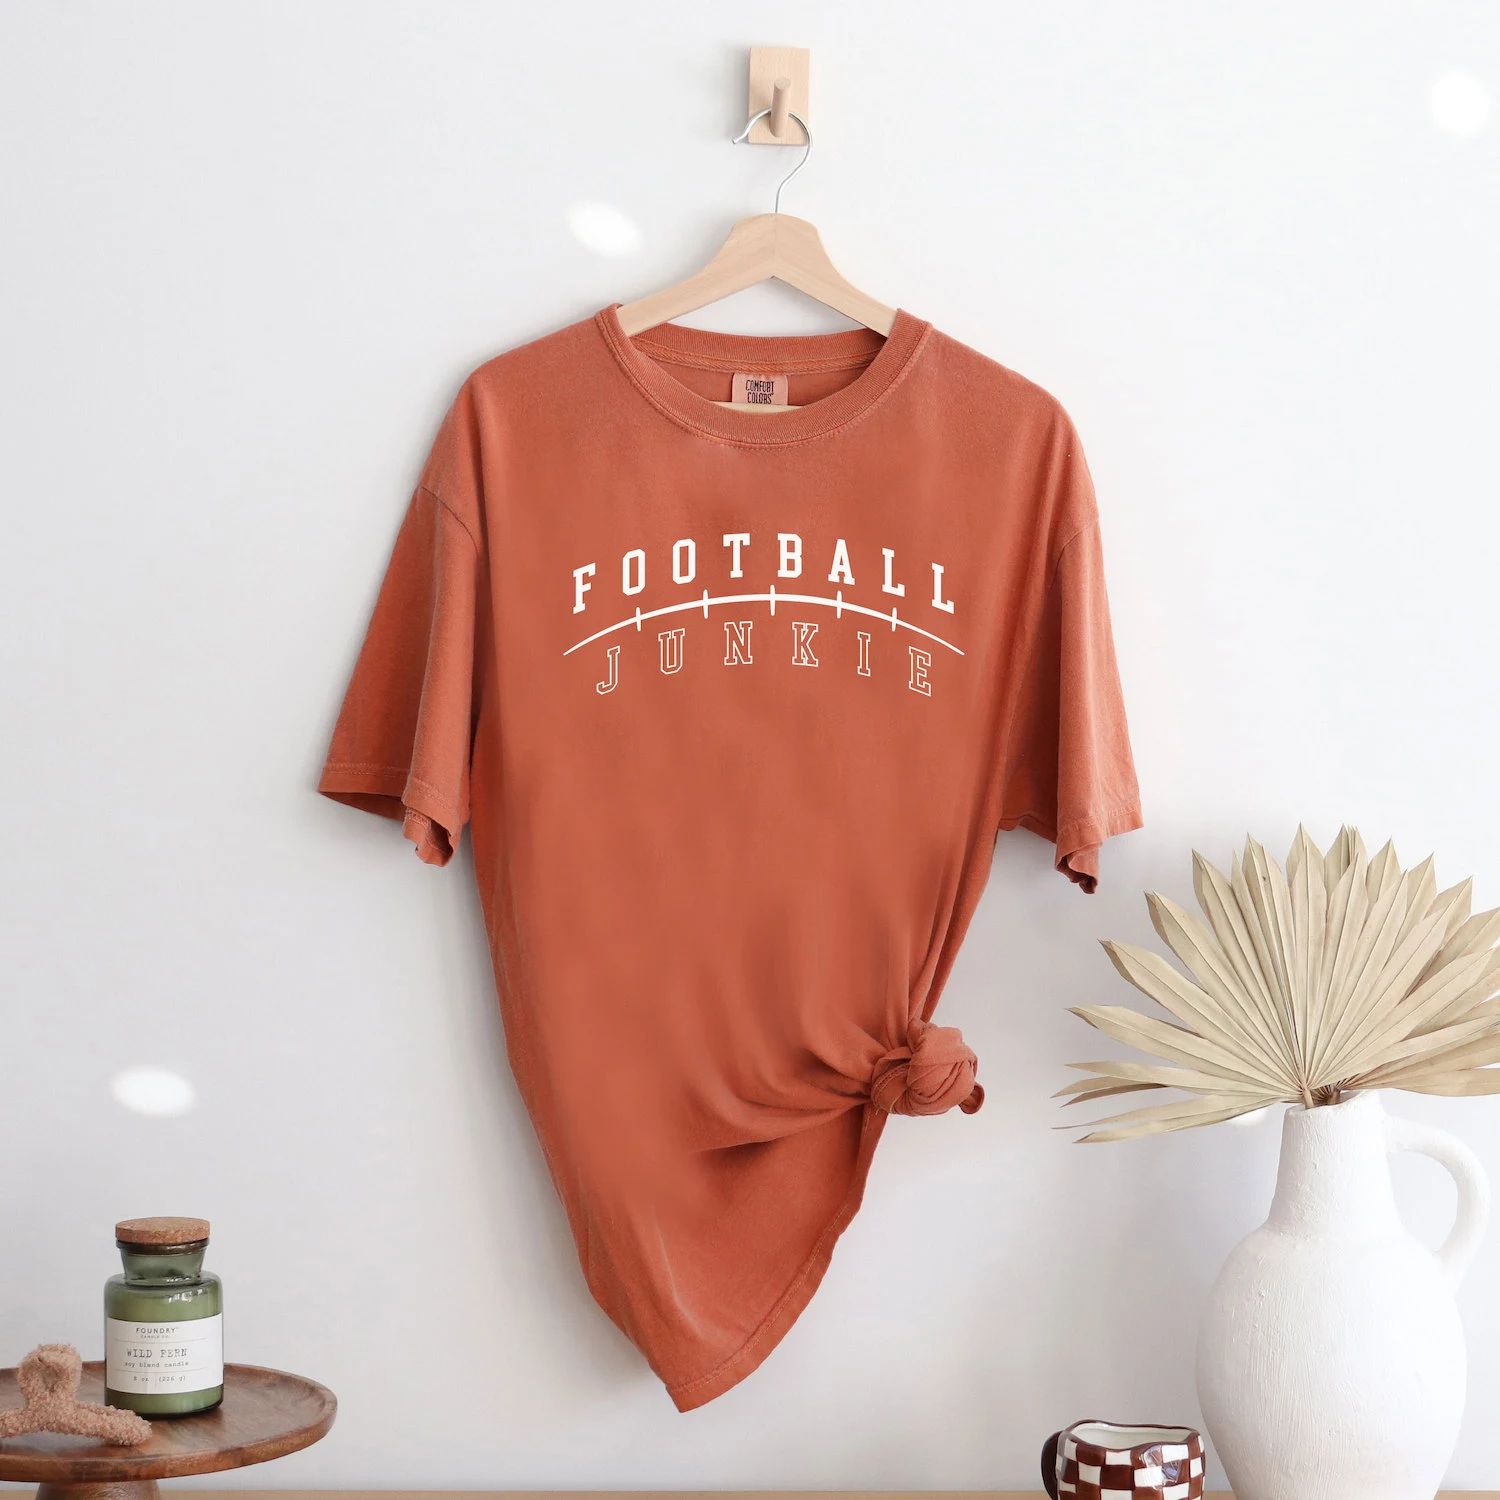 Футболки Football Junkie, окрашенные в одежду Simply Sage Market